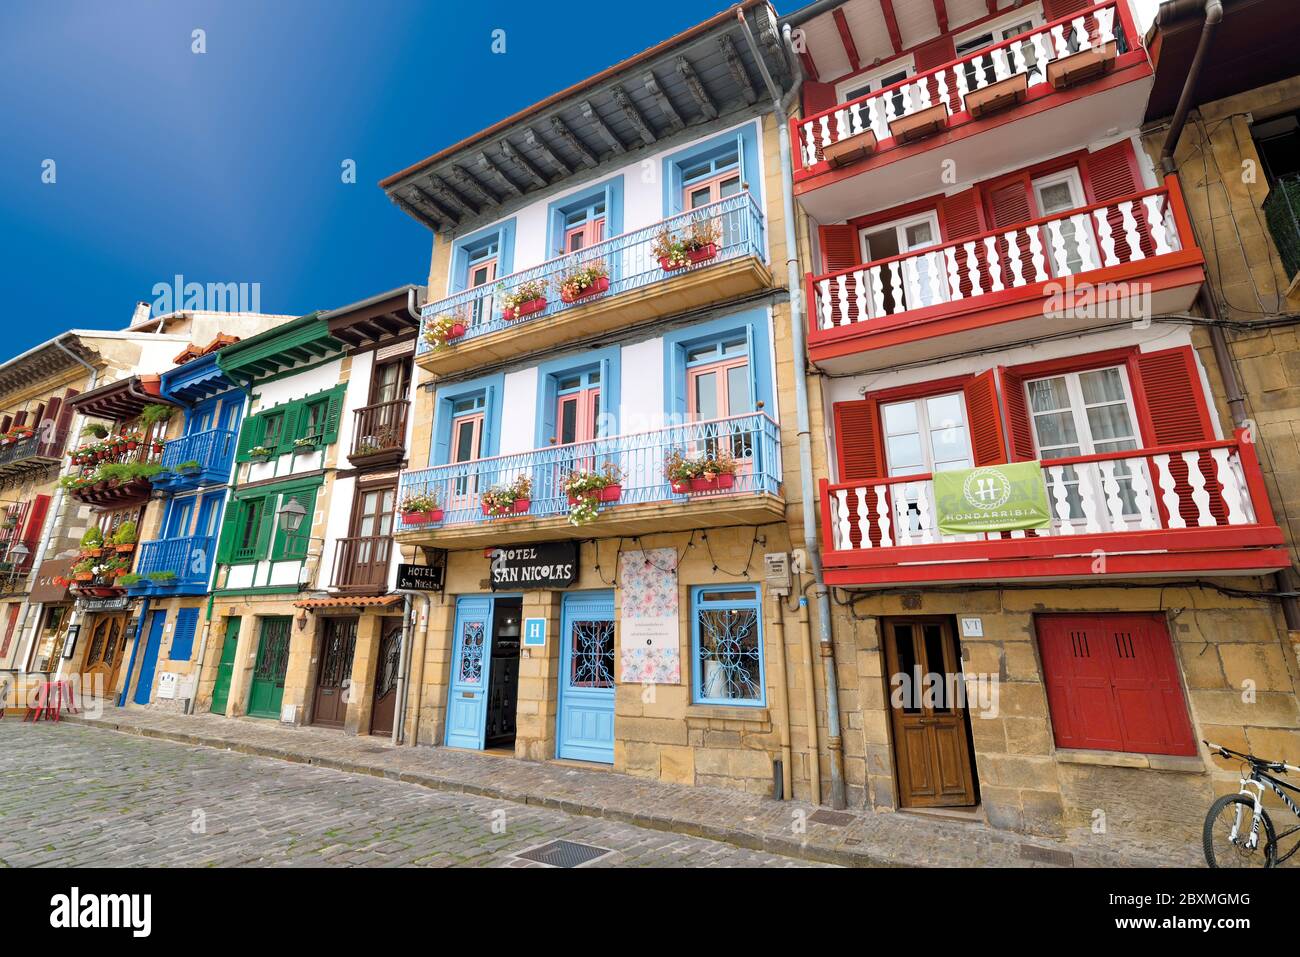 Case colorate con balconi e finestre rosse e blu che fiancheggiano una strada medievale nel centro della città di Hondurribia Foto Stock